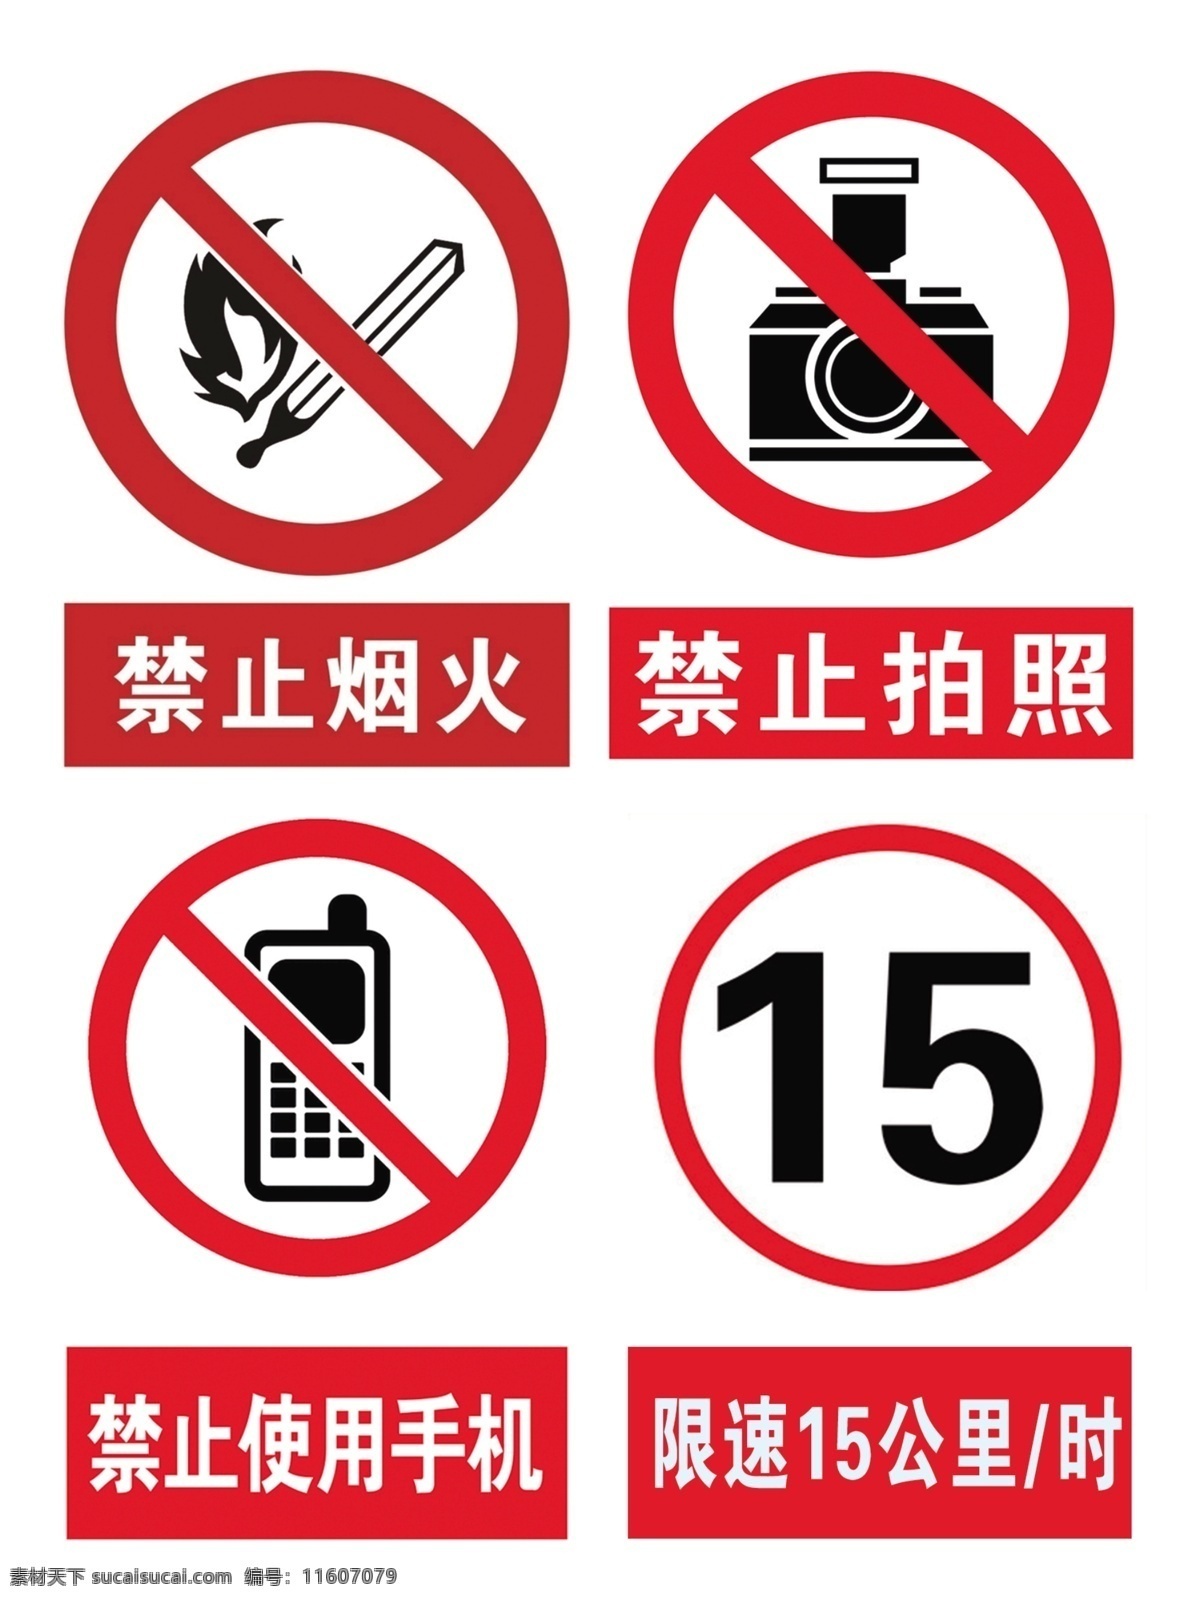 禁止烟火 禁止拍照 禁止使用手机 限速15公里 炸药工厂禁止 化工工厂严禁